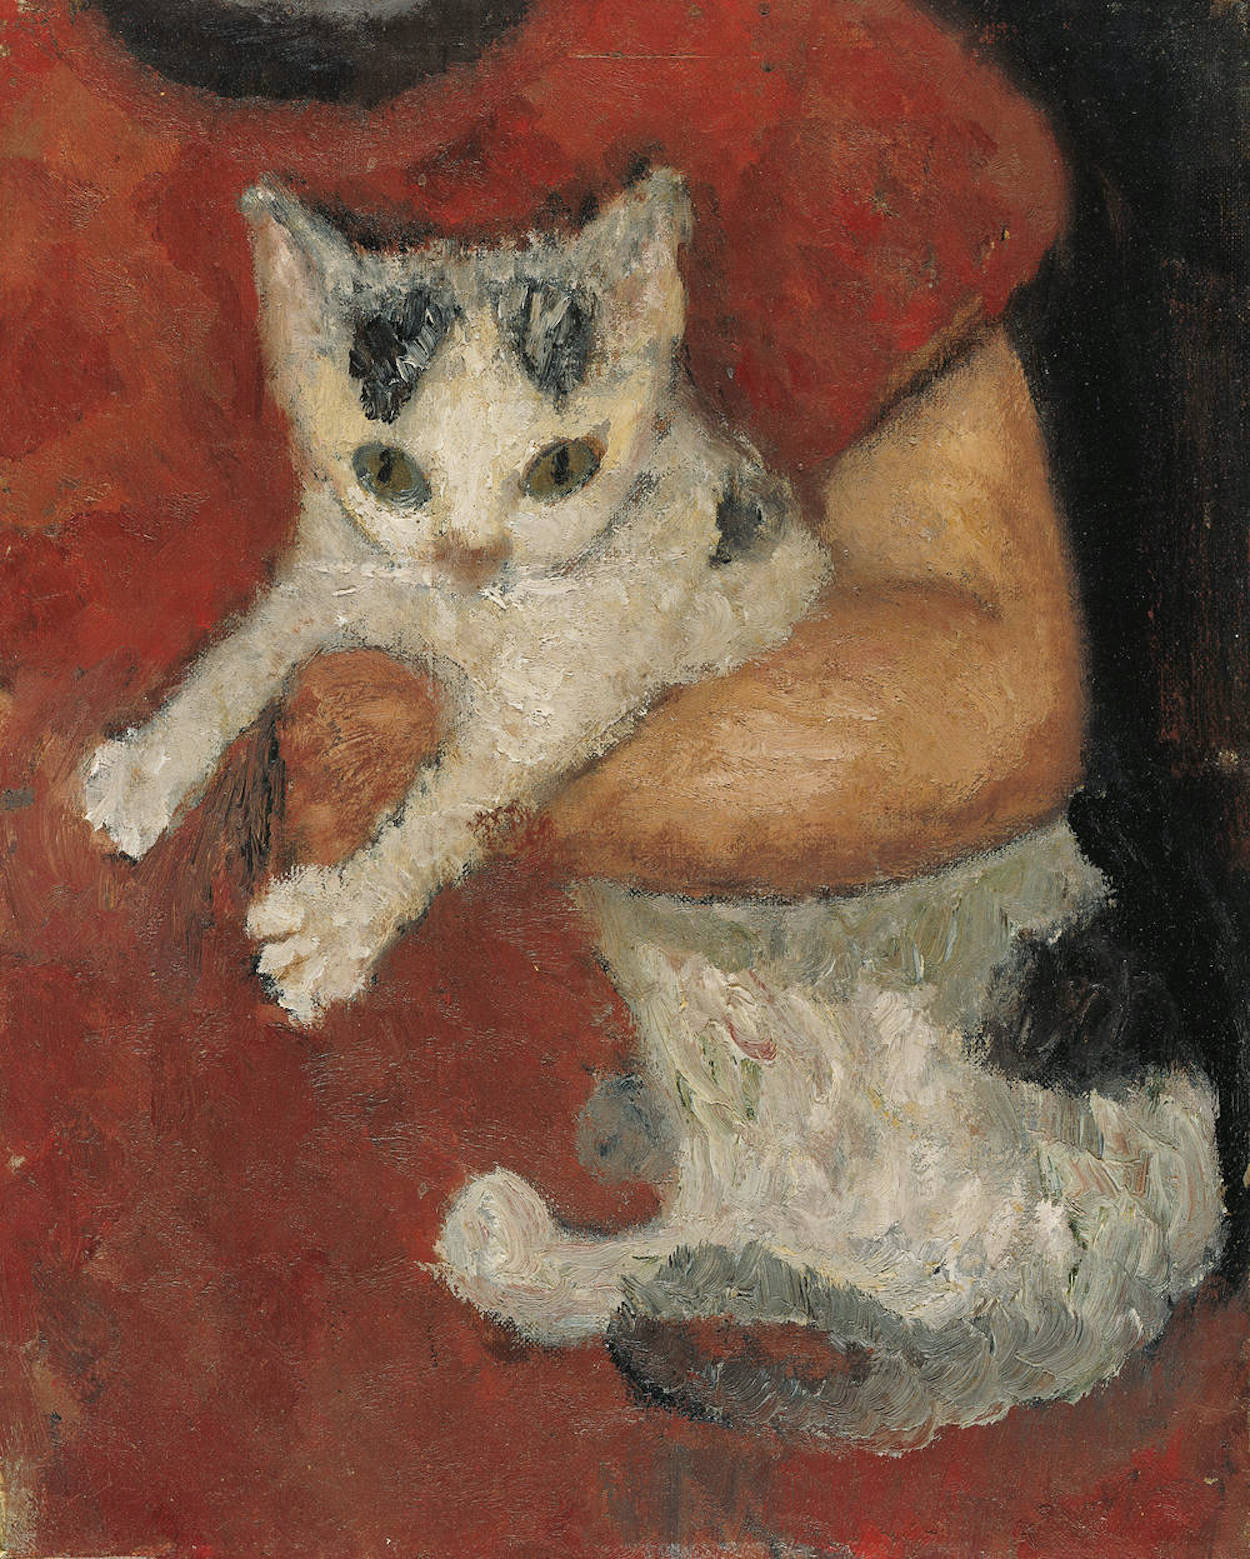 Kat op de arm van een kind by Paula Modersohn-Becker - 1903 - 32,5 x 25,6 cm Kunsthalle Bremen